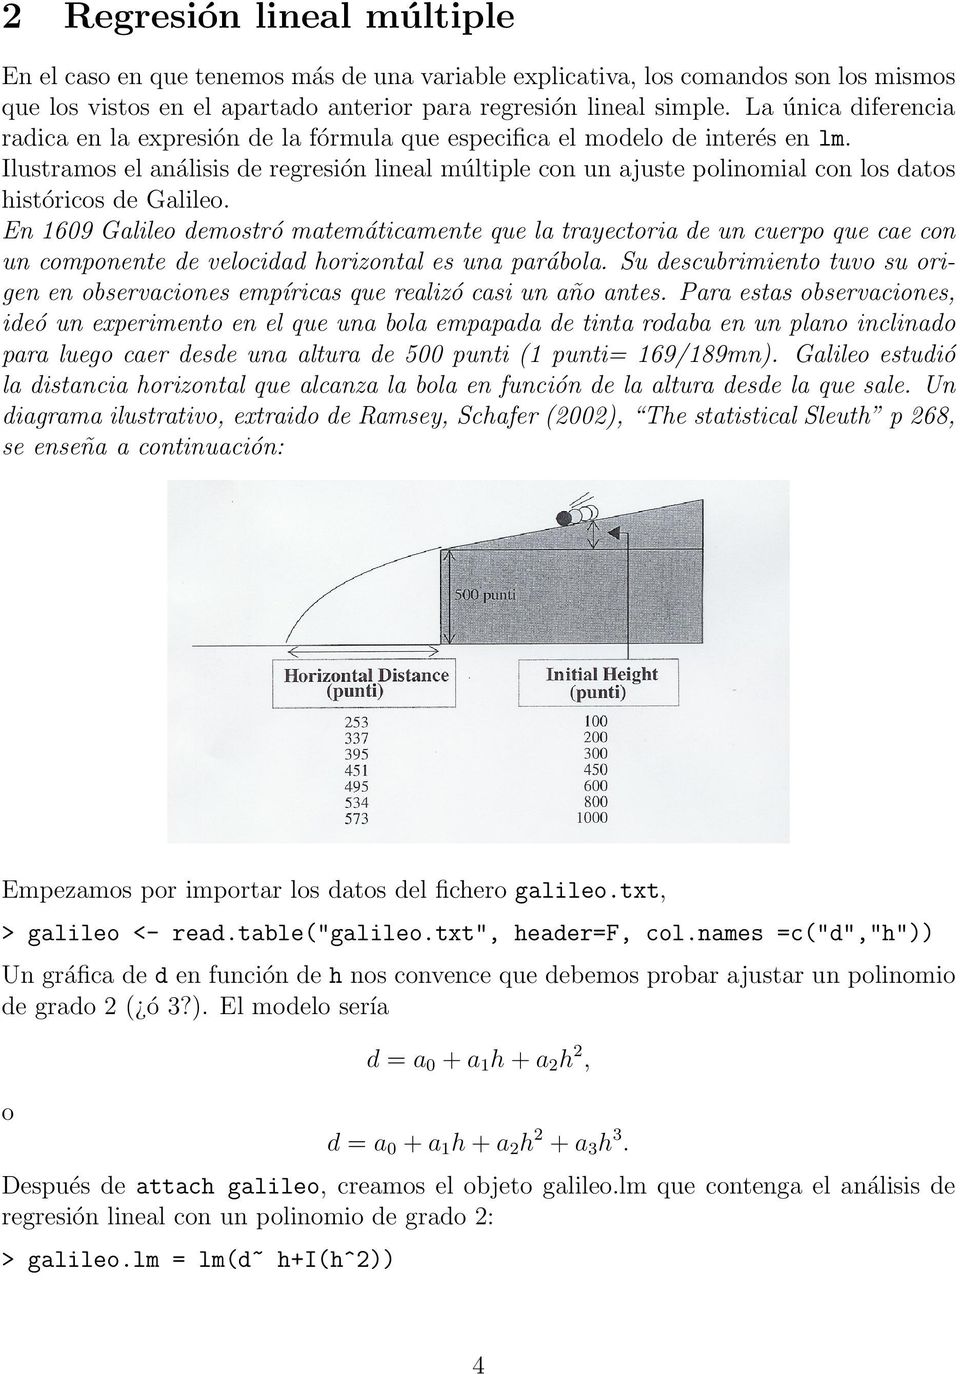 Ilustramos el análisis de regresión lineal múltiple con un ajuste polinomial con los datos históricos de Galileo.